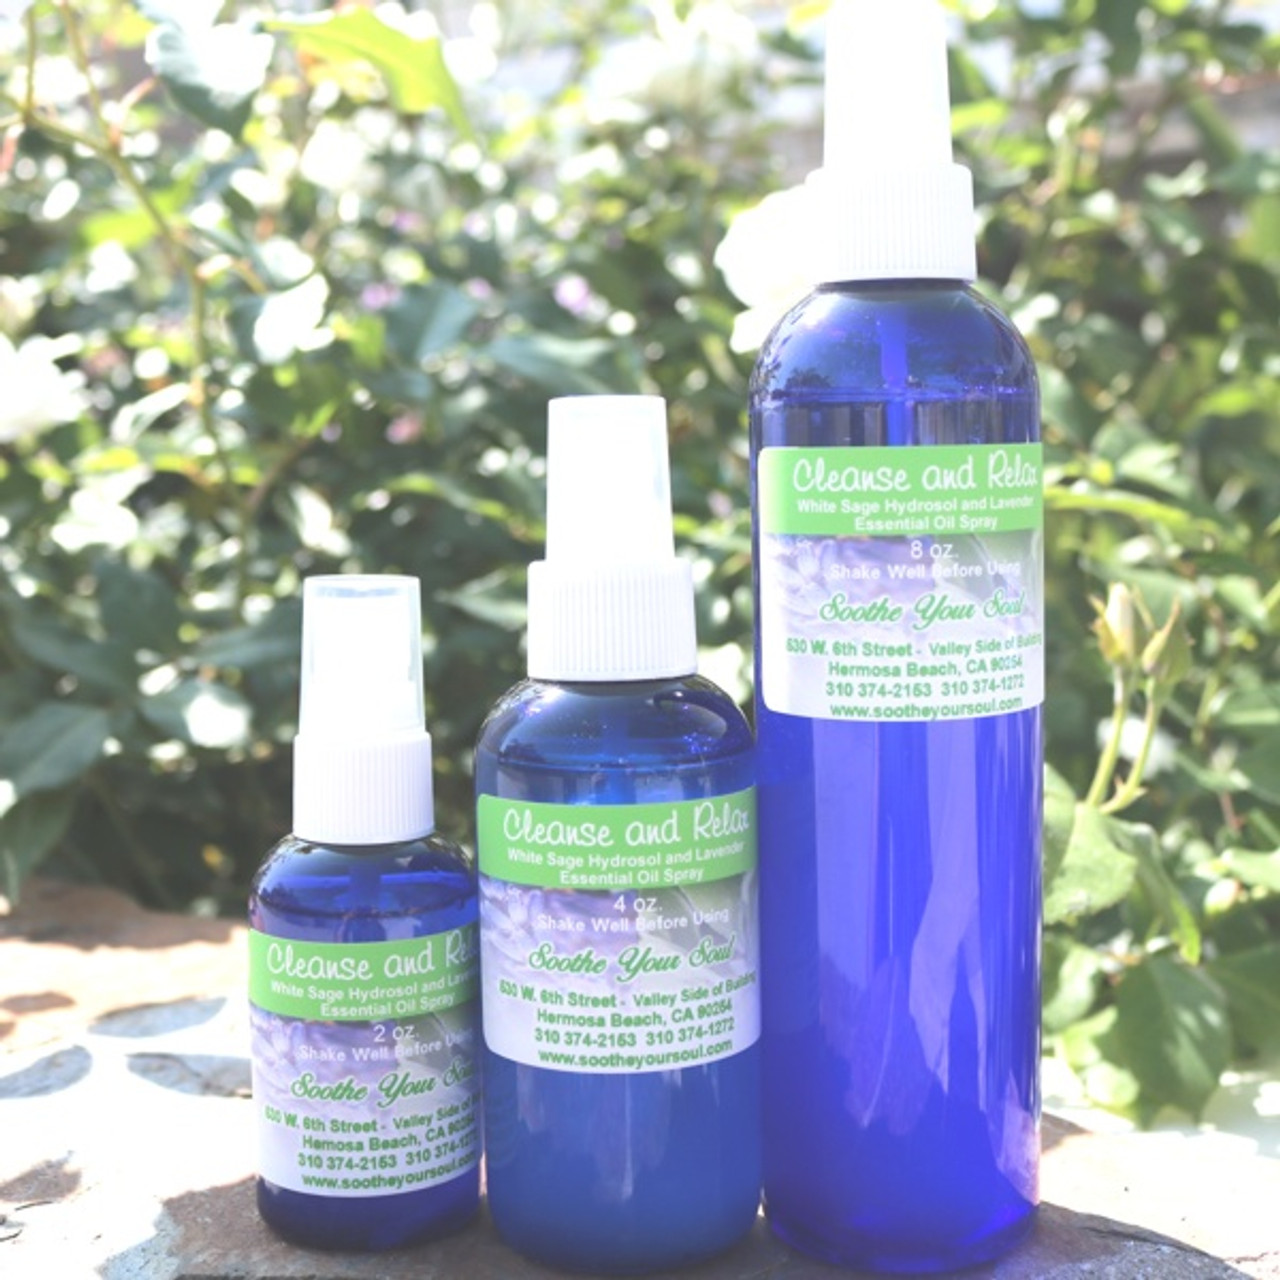 Lavender Essential Oil Spray 